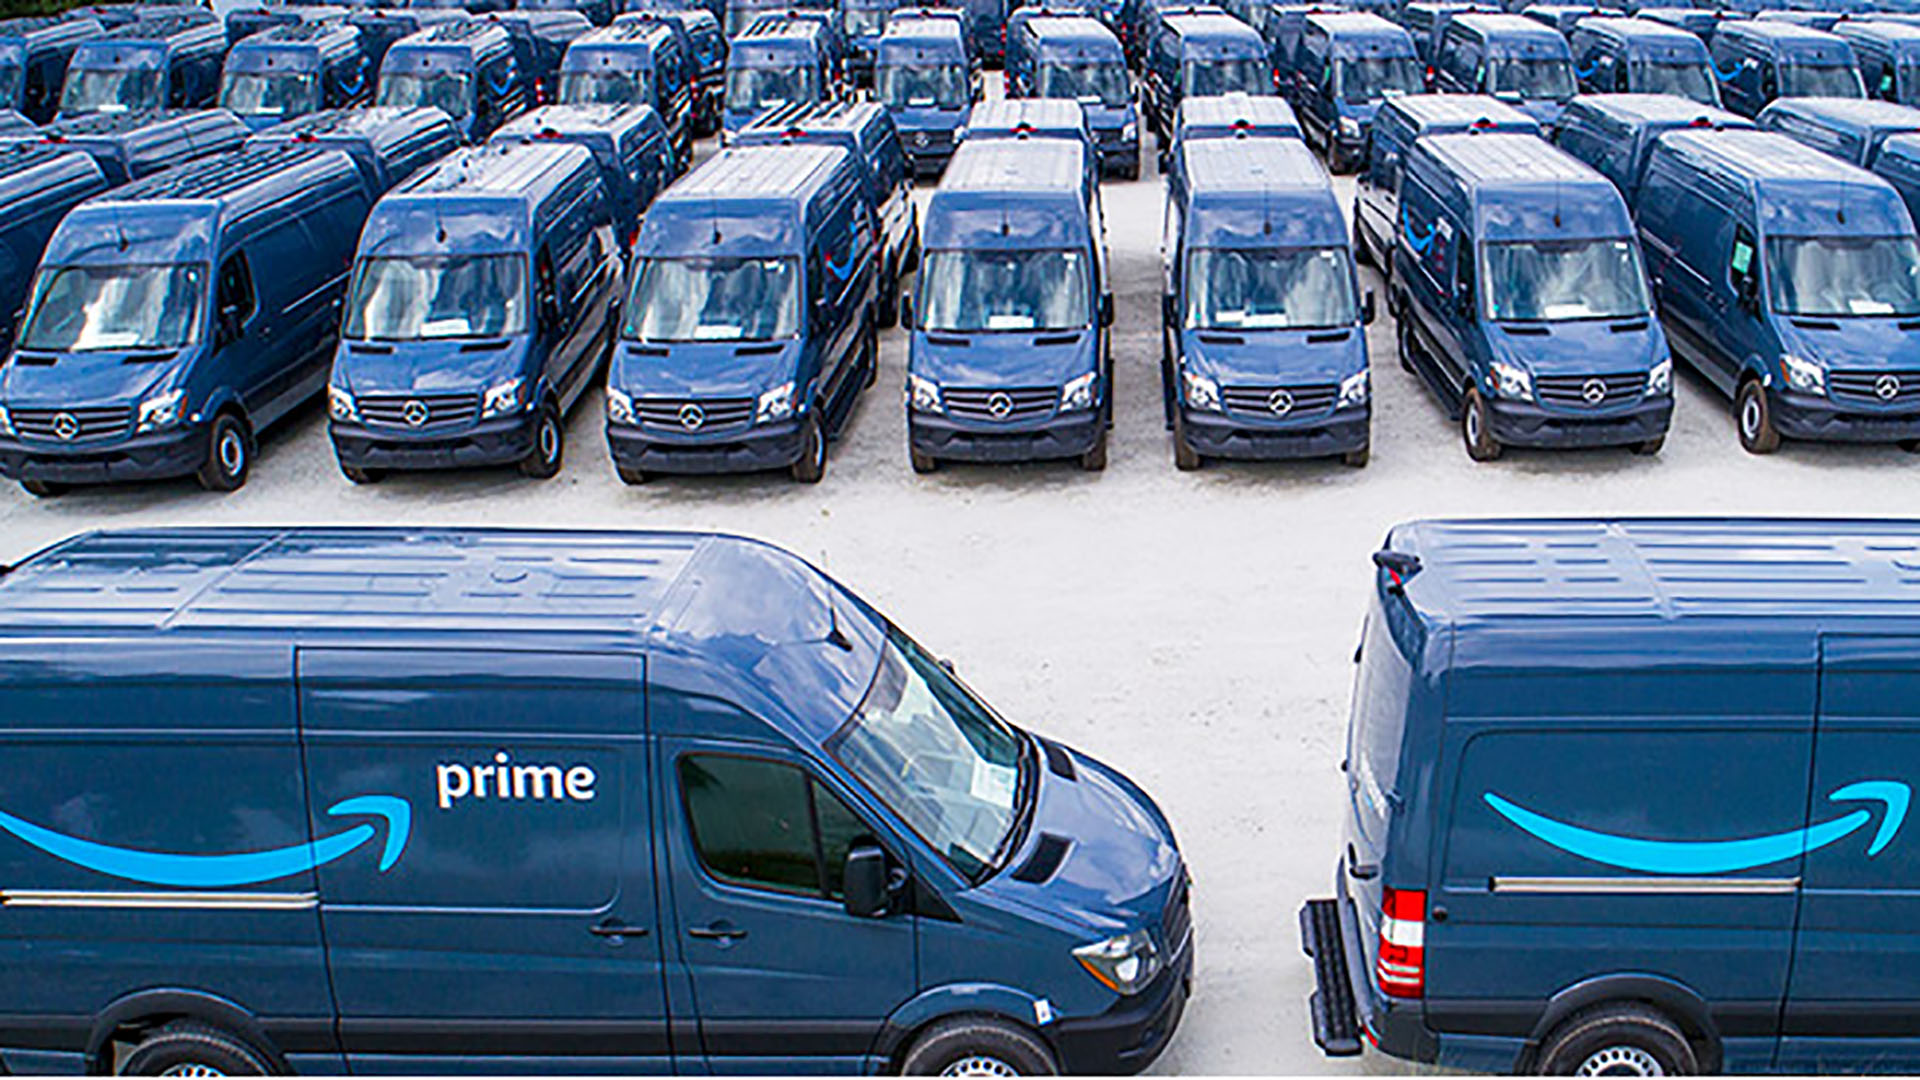 Amazon Mercedes vans